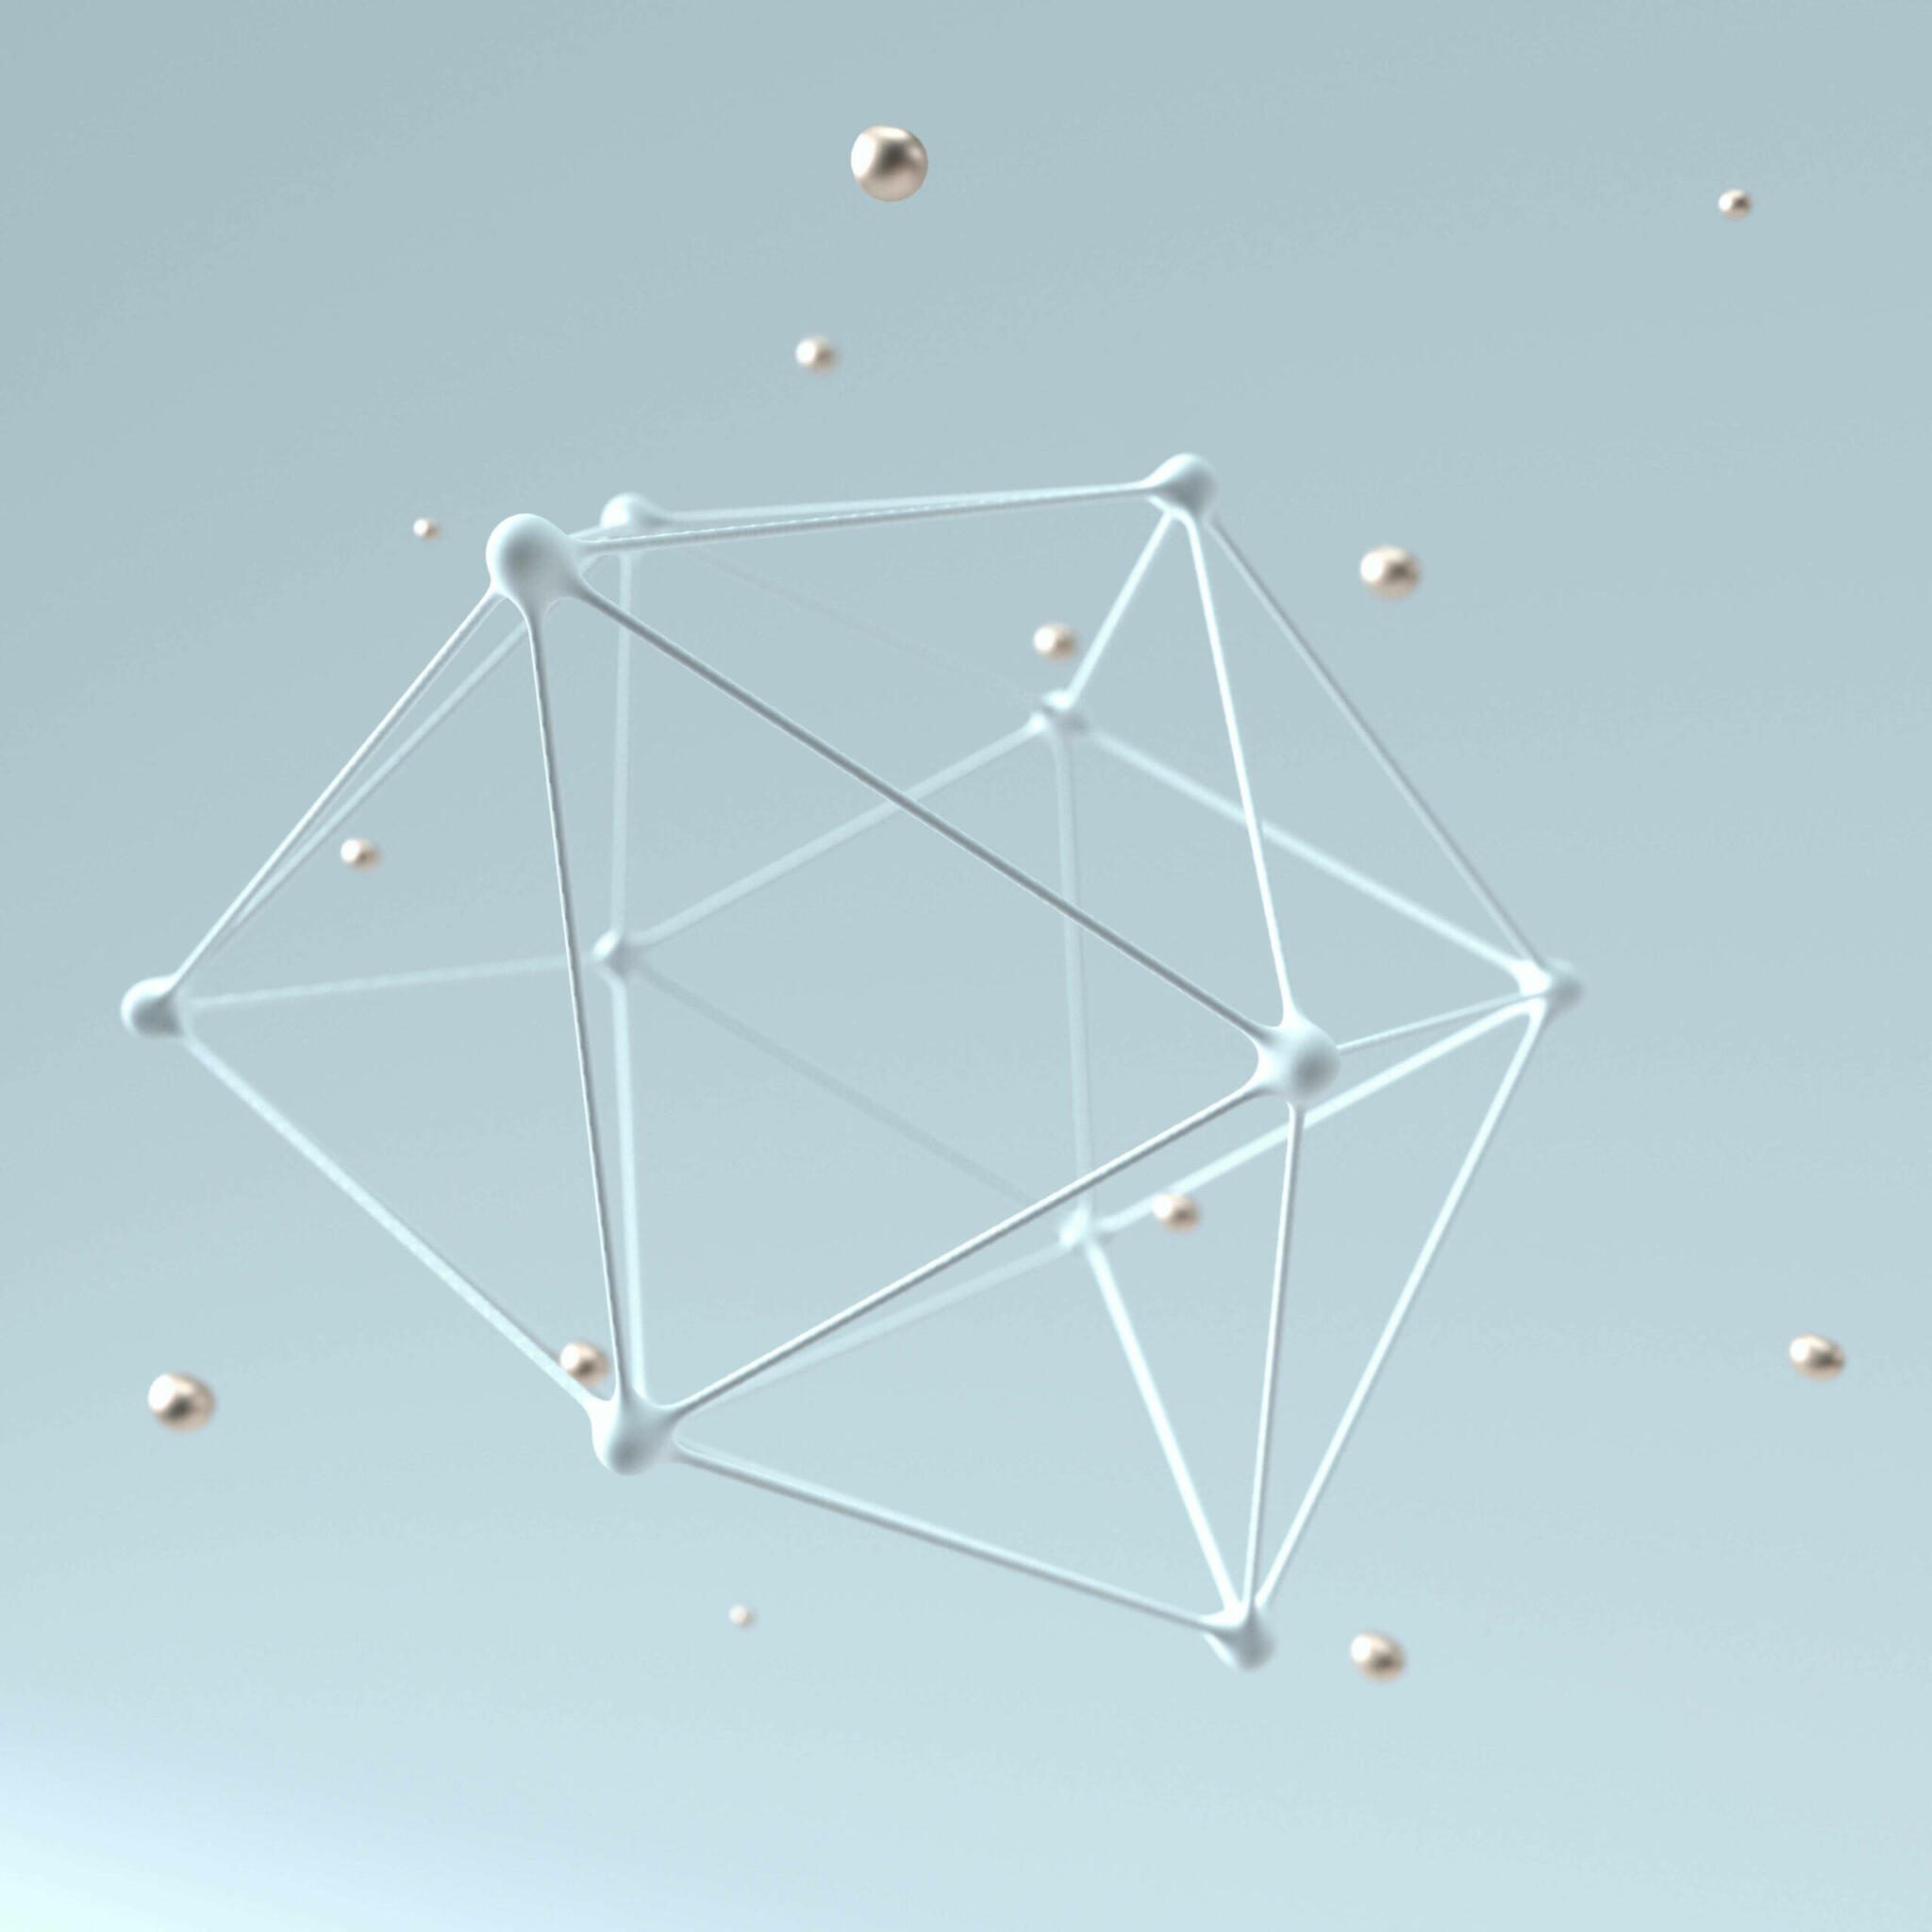 3D-Darstellung eines Moleküls mit abstrakten, verbundenen Linien, umgeben von einzelnen Atomen, die Ionenbildung in Luft symbolisieren.